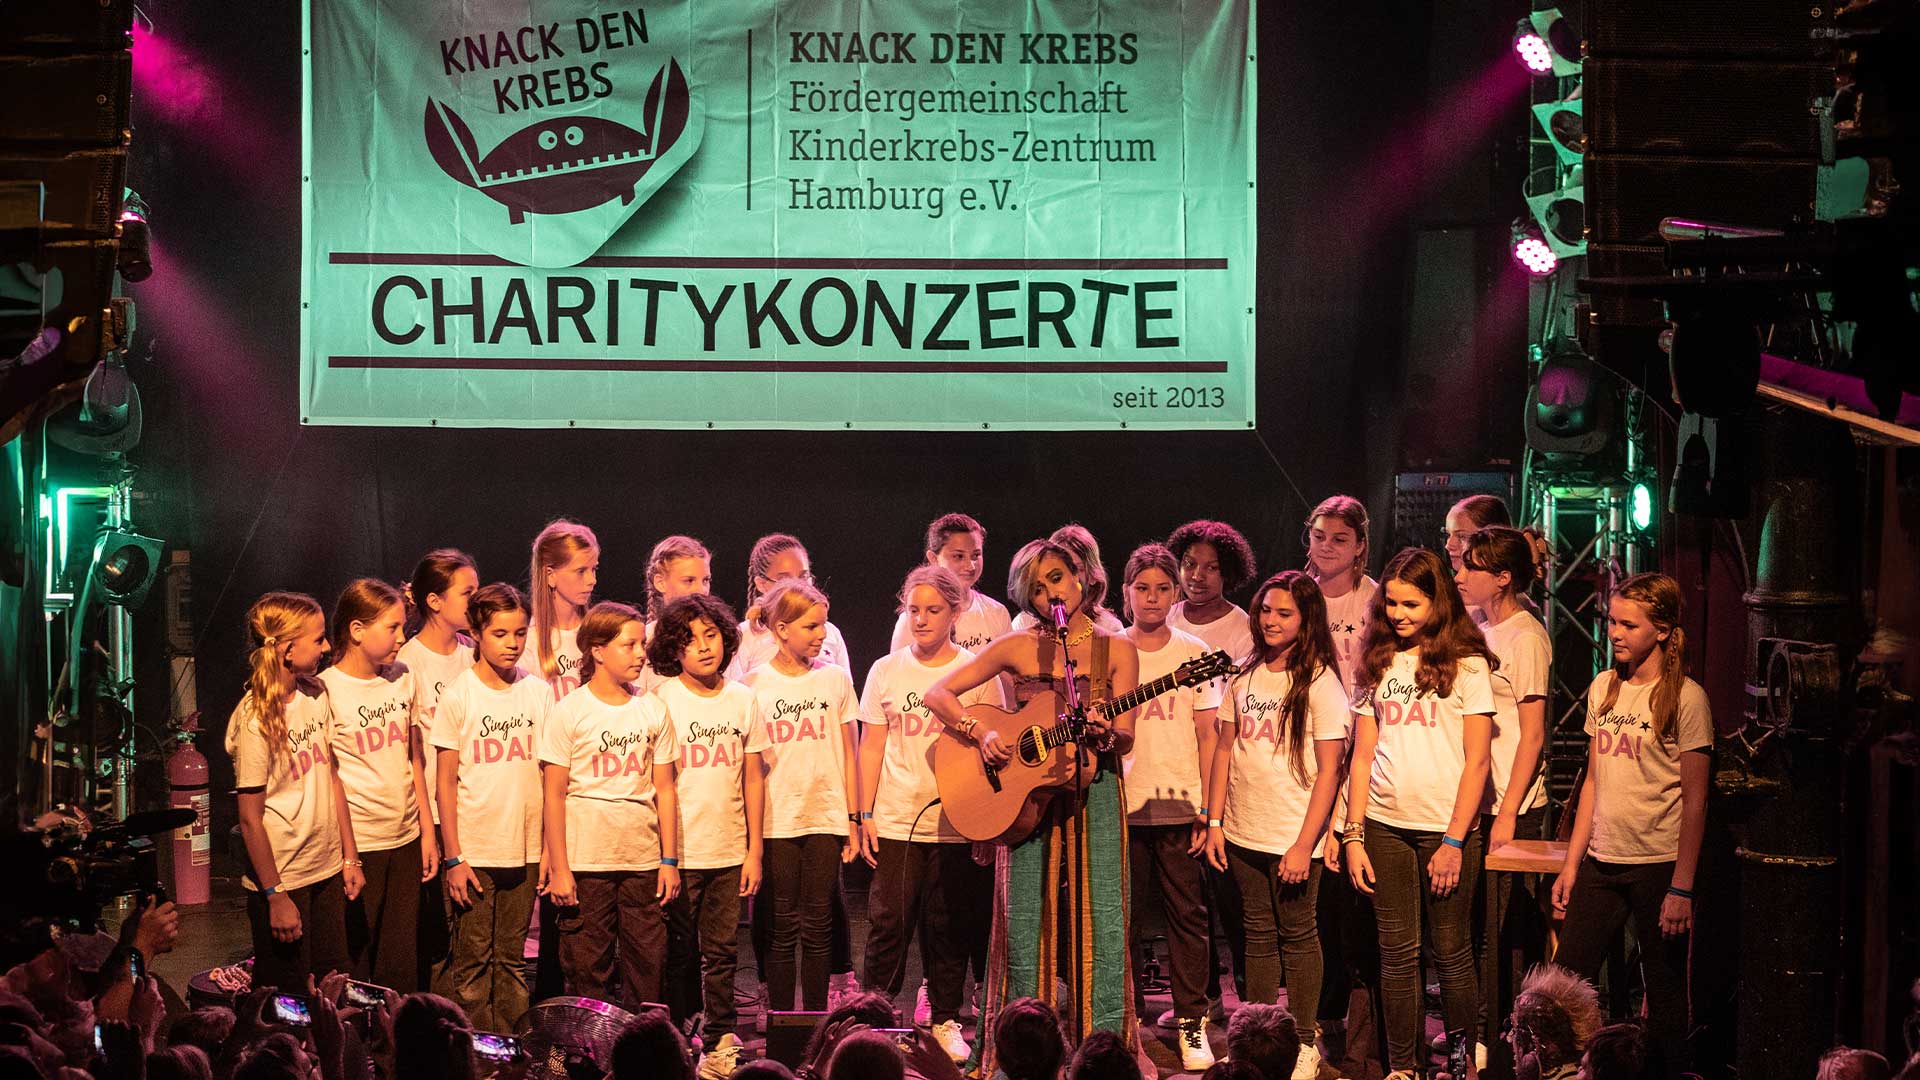 Ein Live-Foto von Singin‘ IDA! – der Kinderchor in Hamburg, auf der Bühne für soziales Engagement bei Knack den Krebs-Charity Konterte